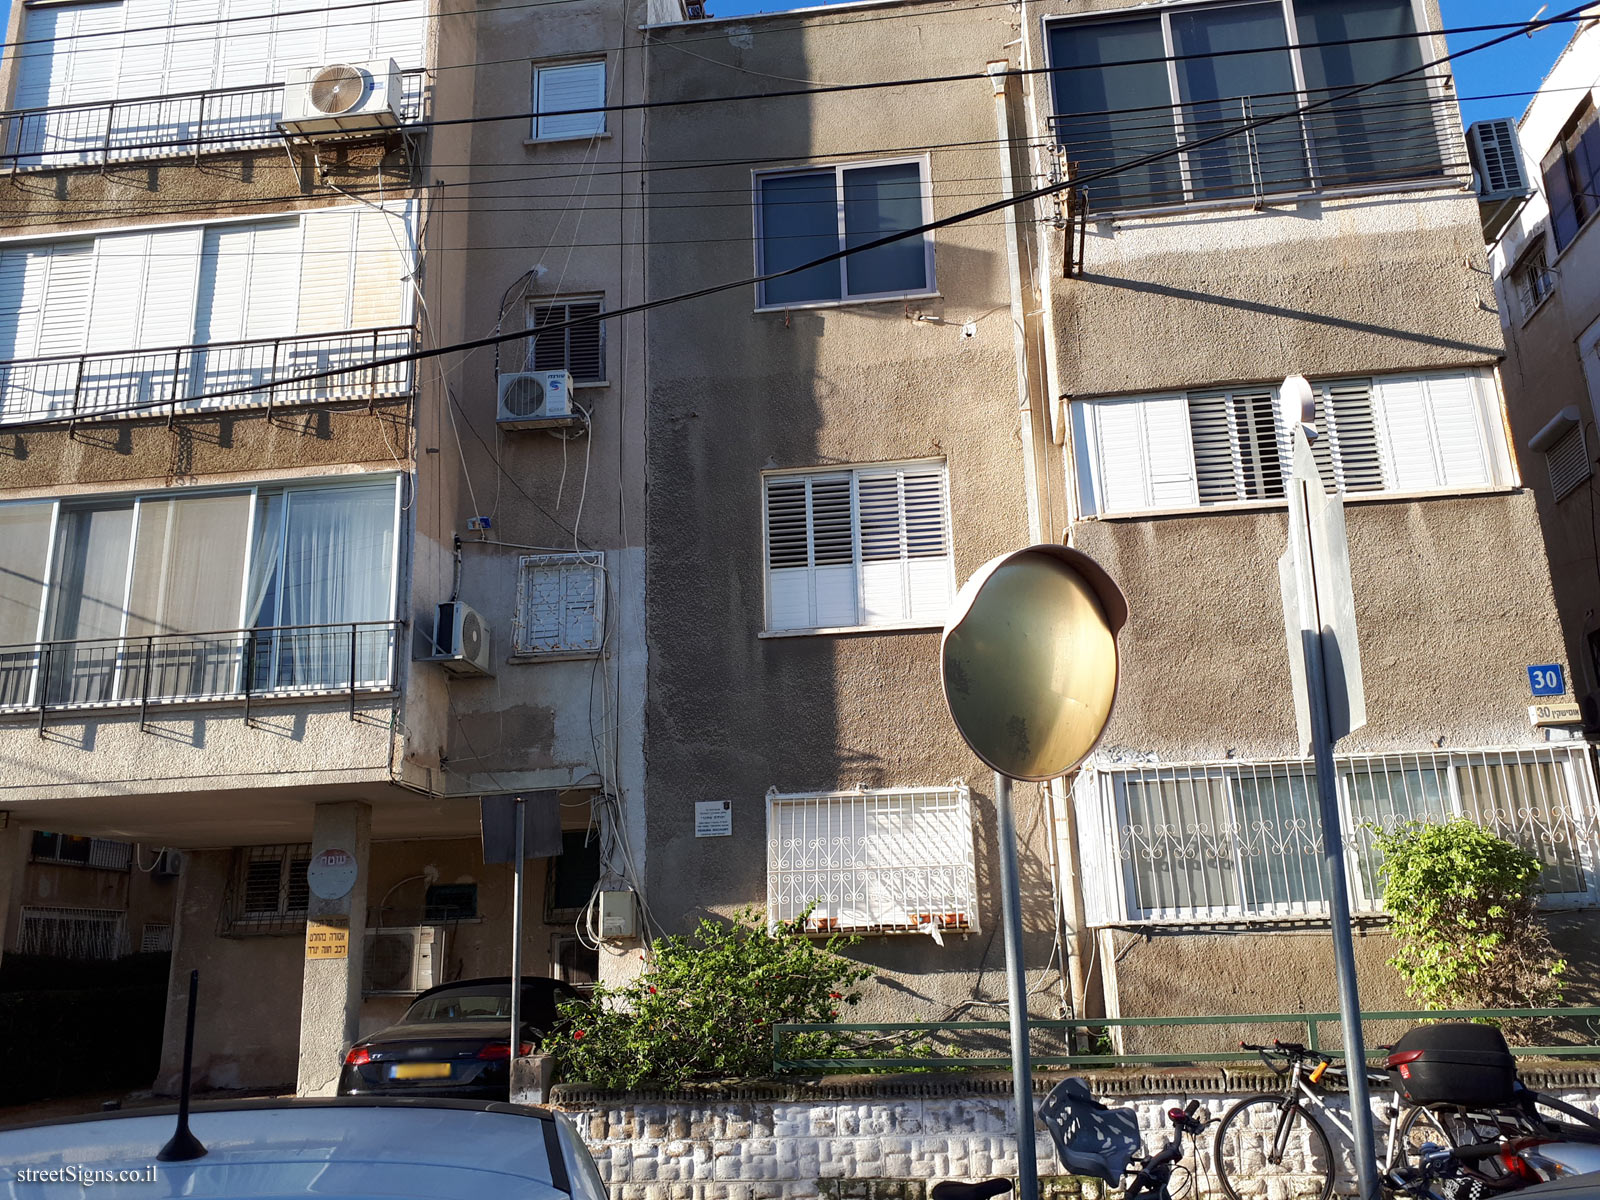 The house of Yehuda Shchory - Ussishkin St 30, Tel Aviv-Yafo